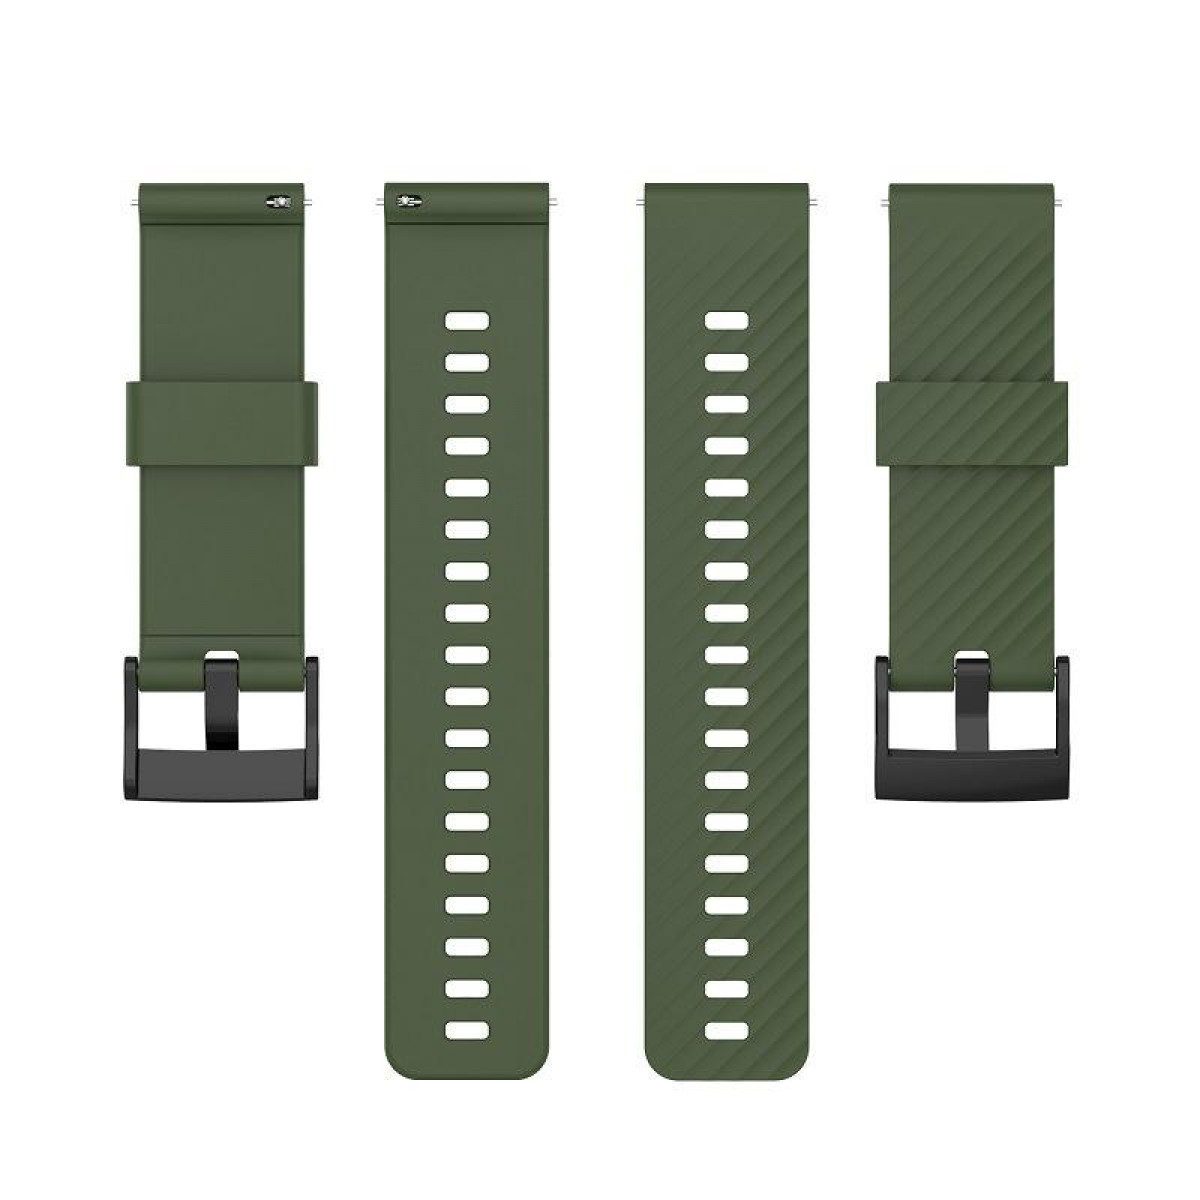 INF Suunto 7/9/9 Baro D5, / Baro Militärgrün Suunto, 7/9/9 / Militärgrün, Silikon D5 Suunto Armband Ersatzarmband